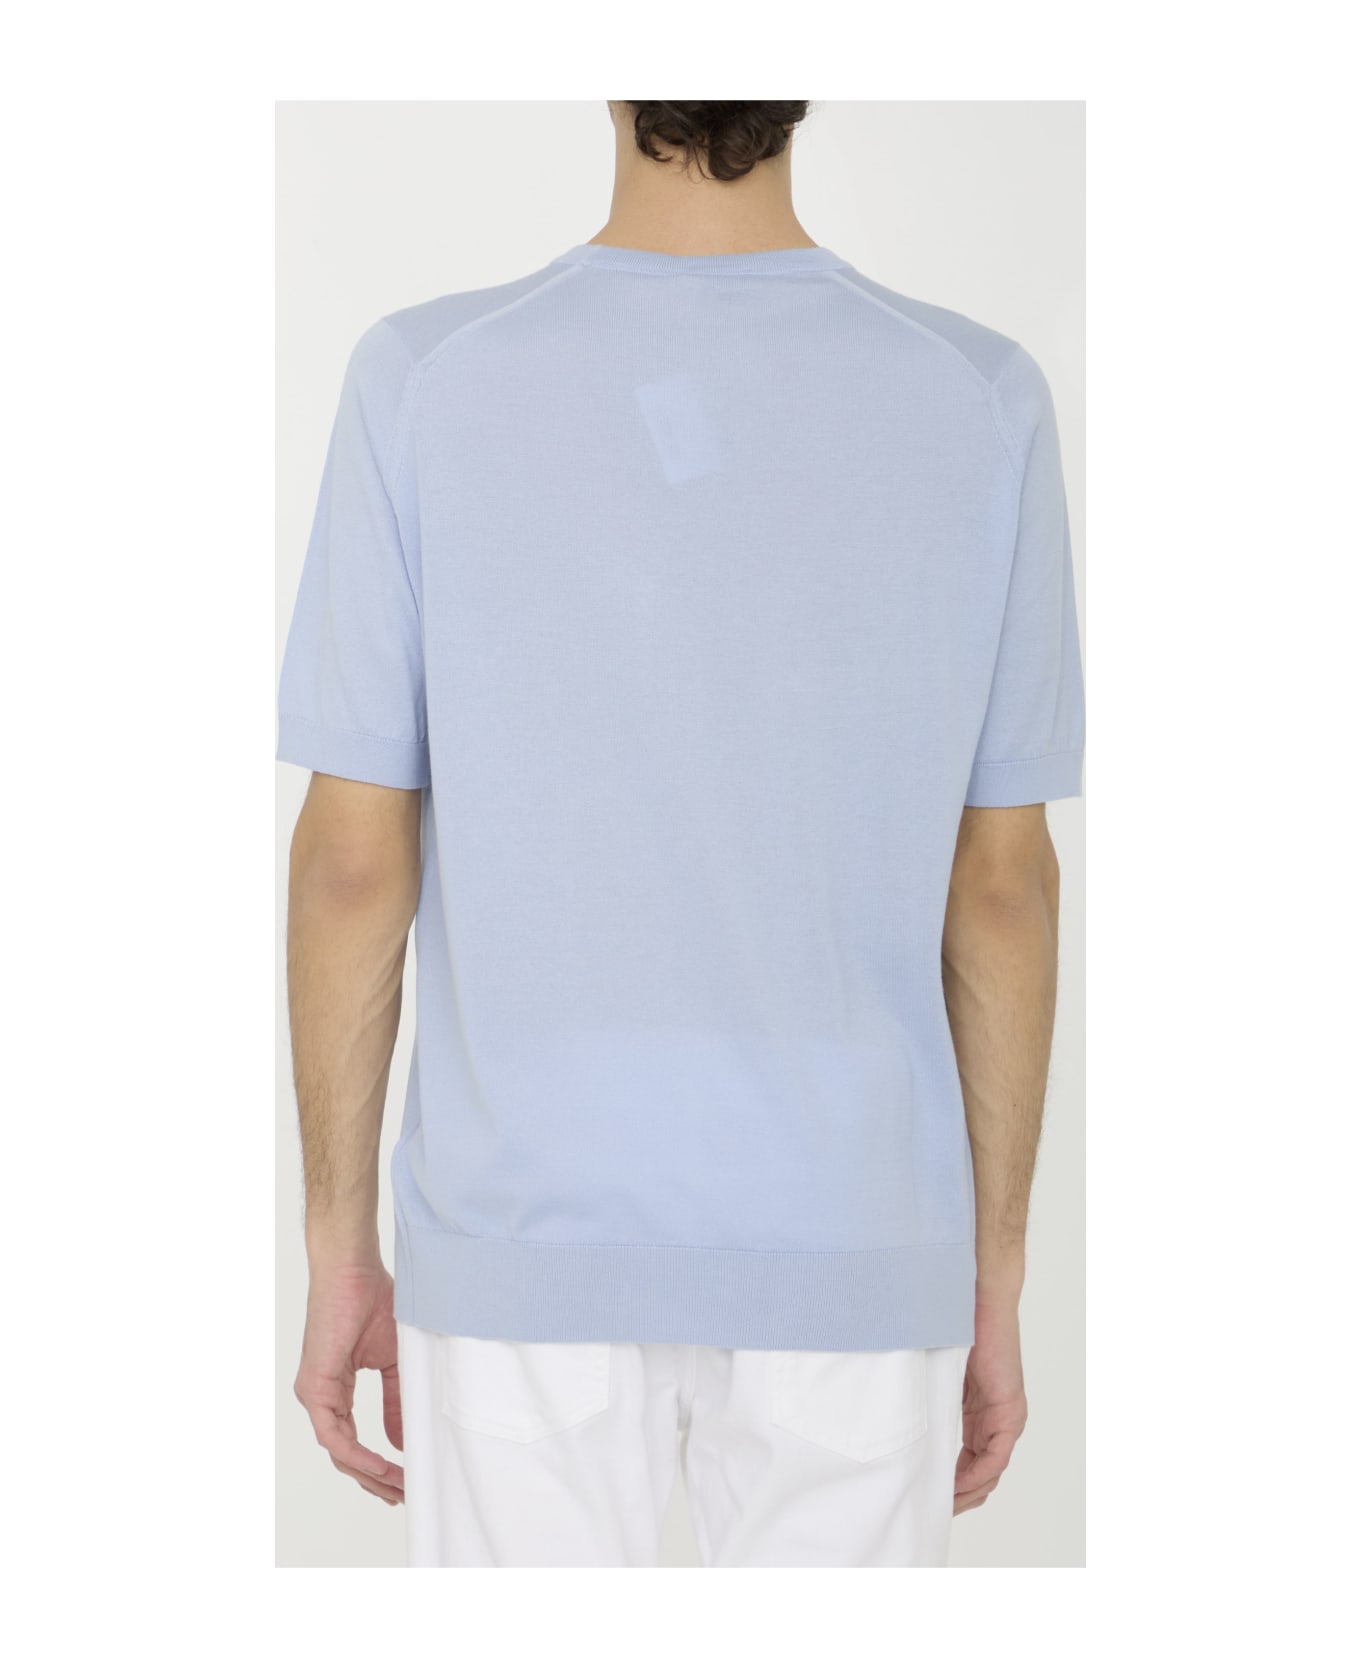 John Smedley Kempton T-shirt - LIGHT BLUE